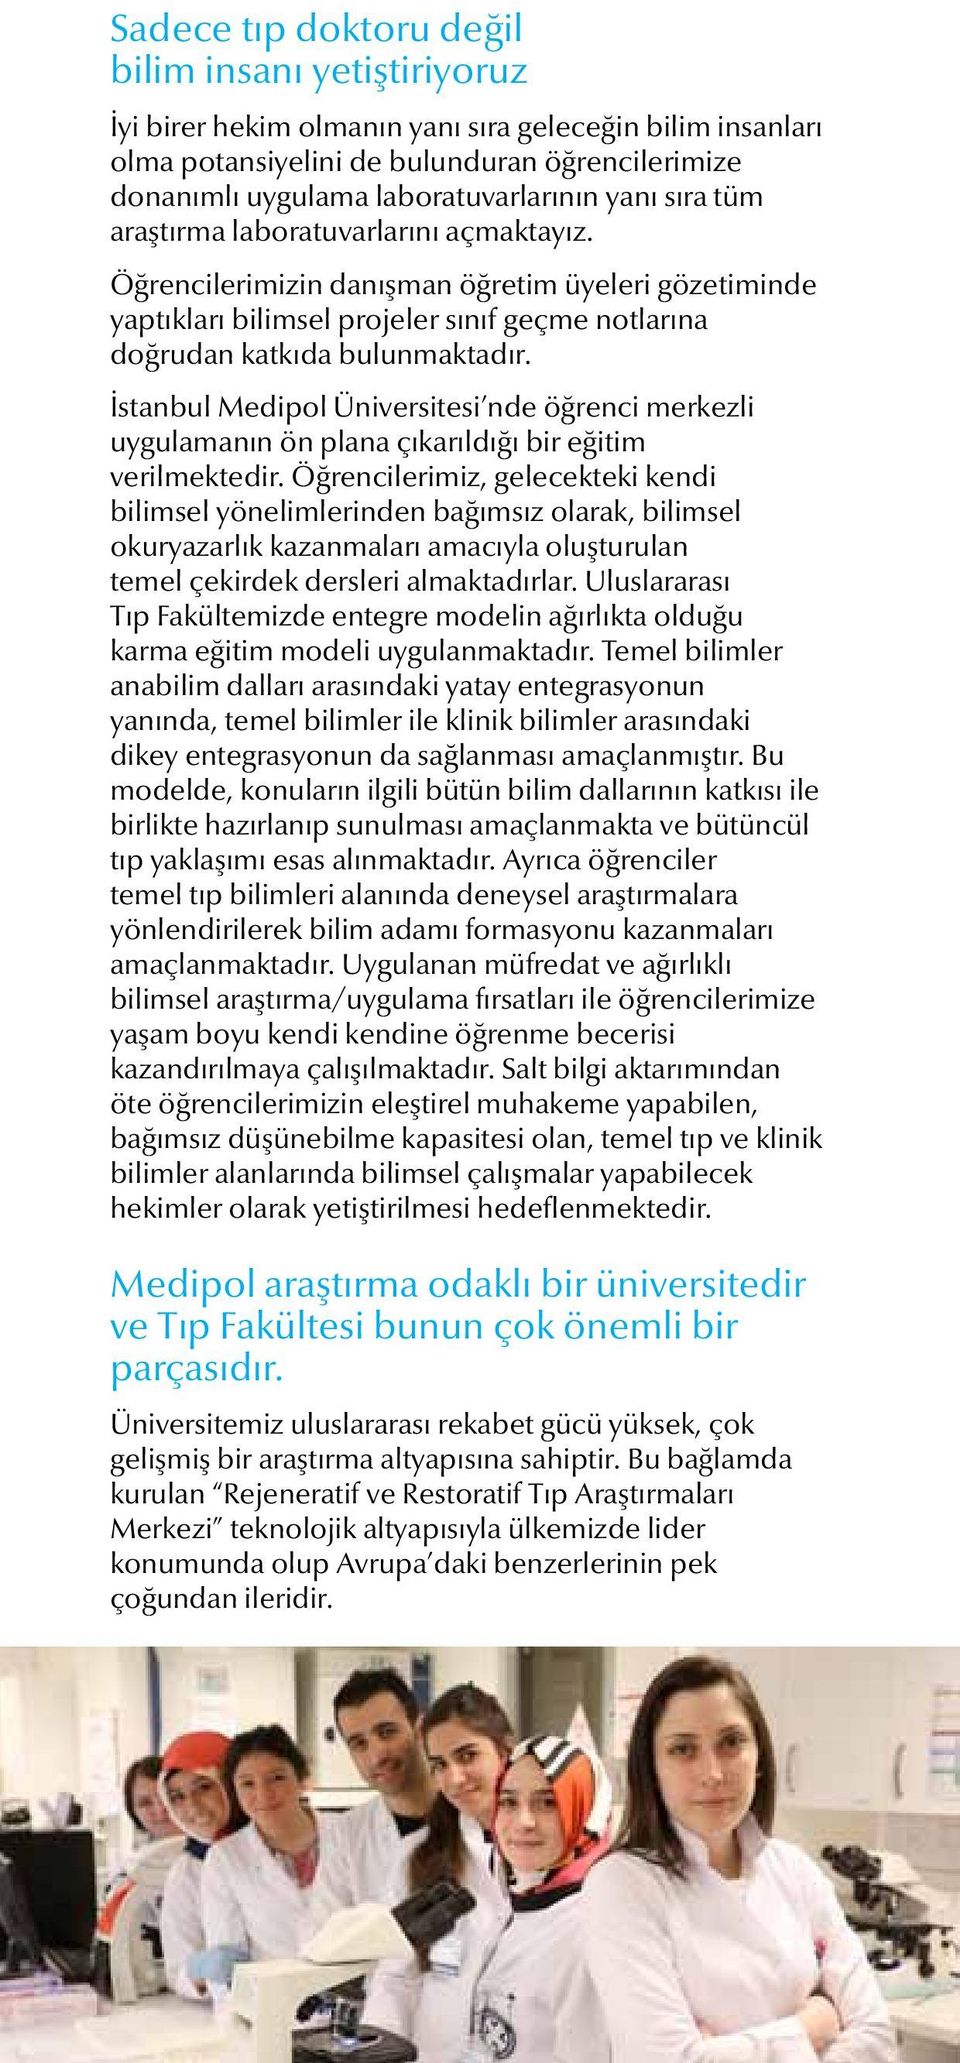 İstanbul Medipol Üniversitesi nde öğrenci merkezli uygulamanın ön plana çıkarıldığı bir eğitim verilmektedir.